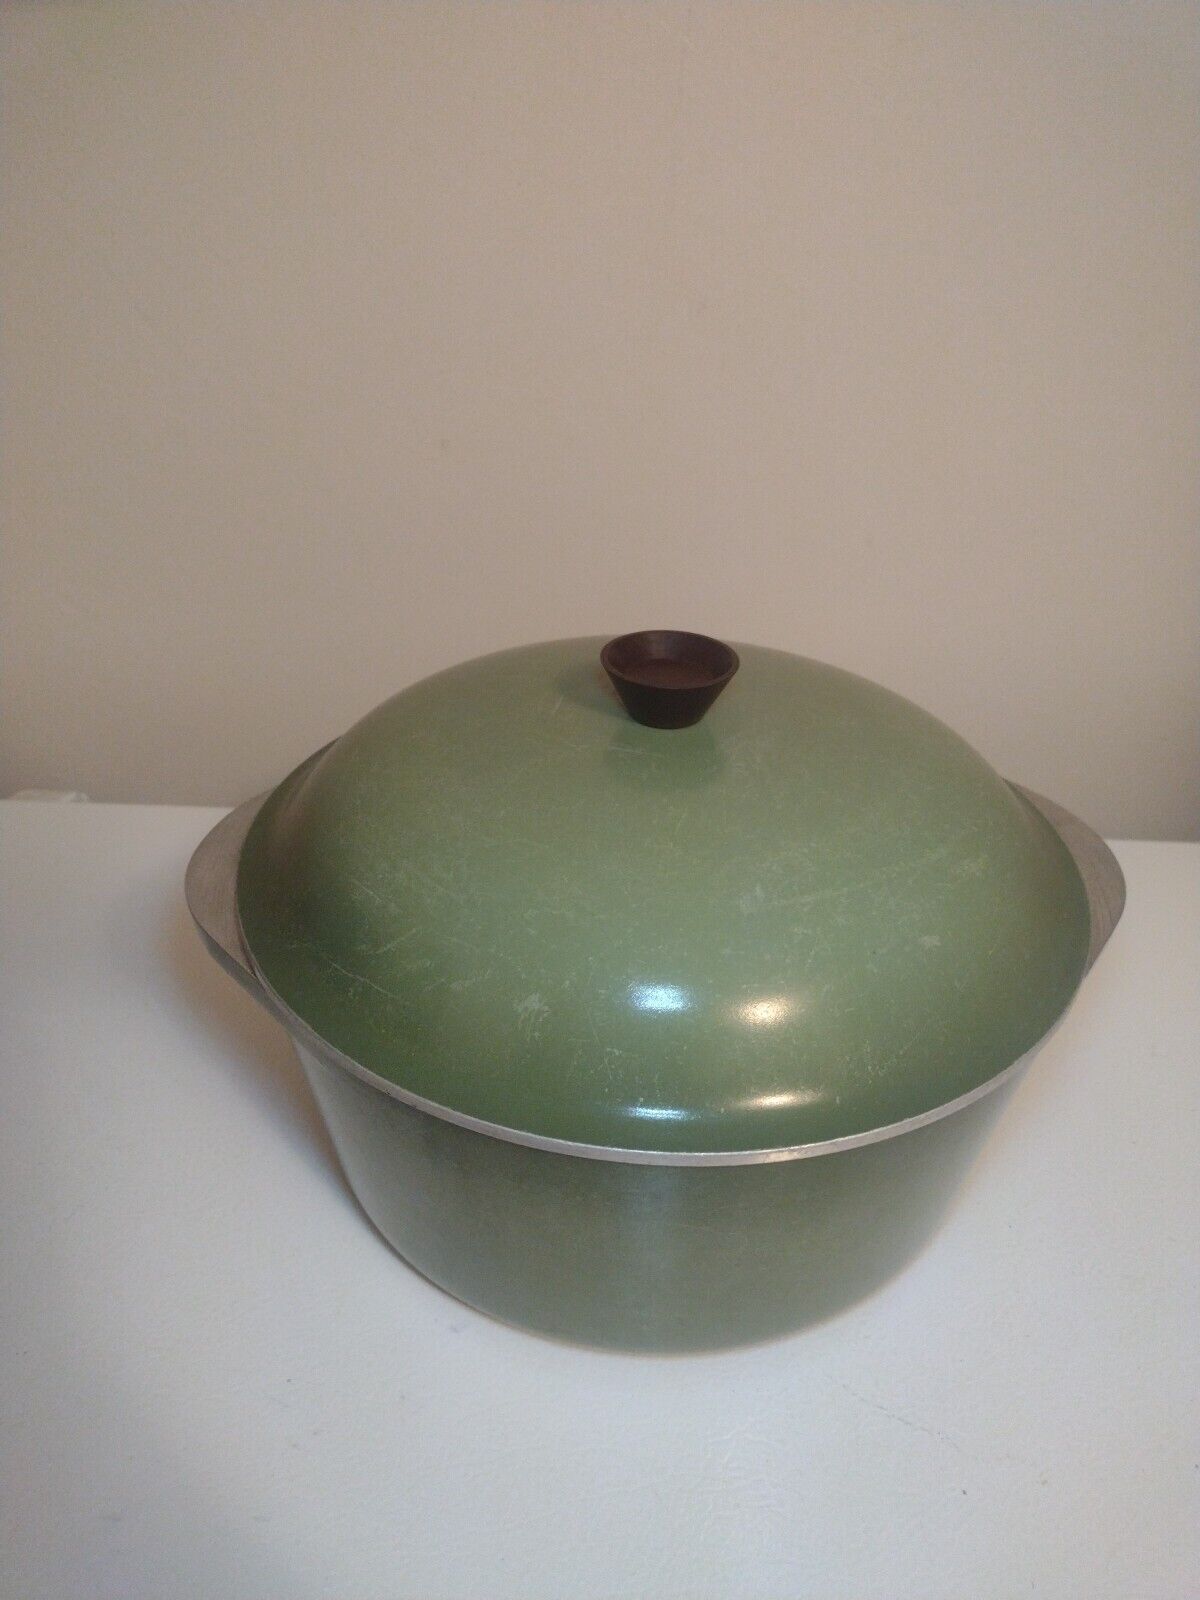 Vintage Club Aluminium Dutch Oven Avocado Green w/ Lid 4QT Pot